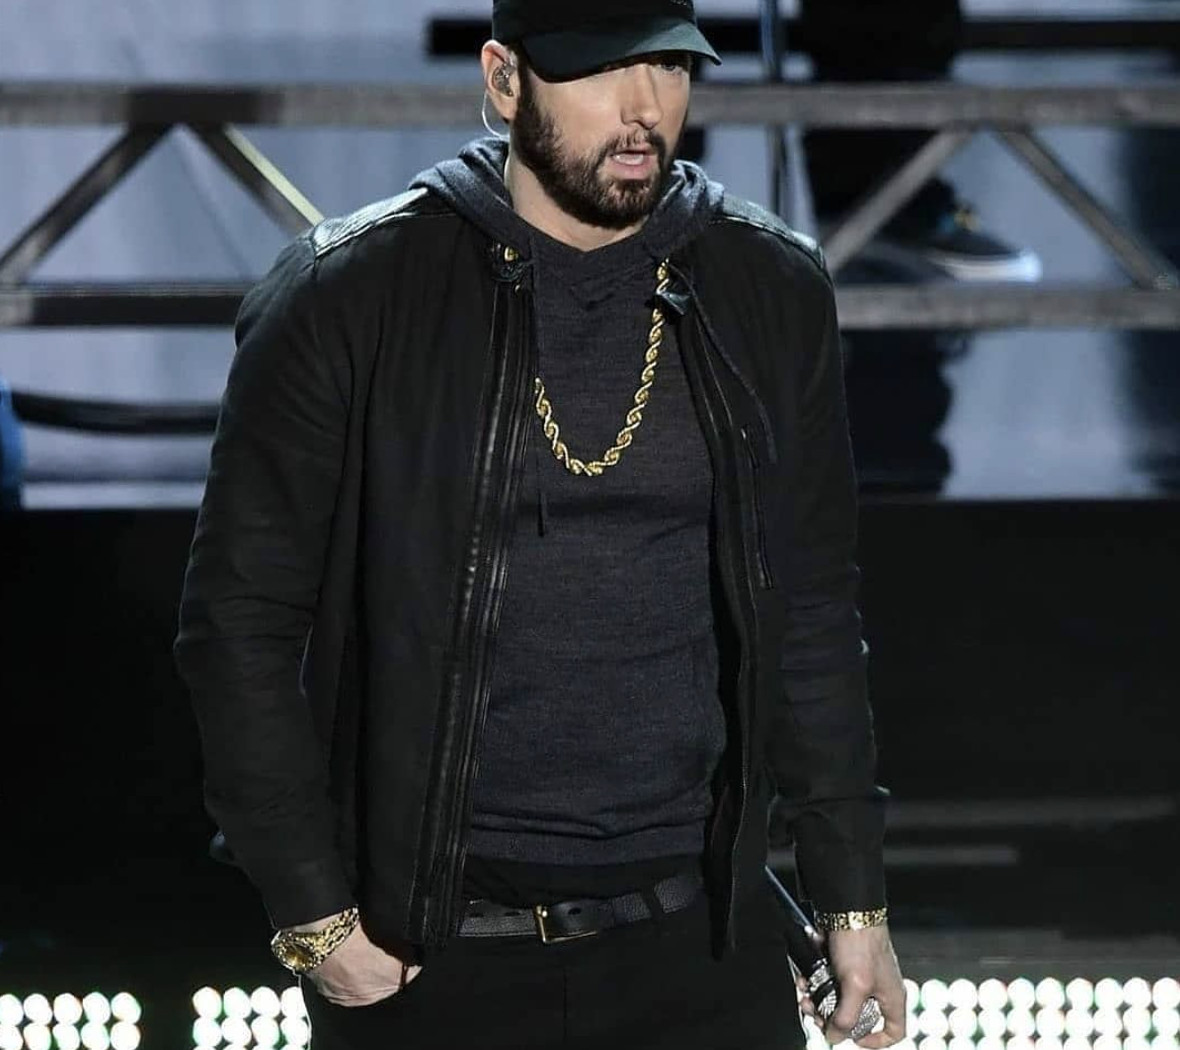 Doliu imens în lumea hip hop. Eminem e devastat de moartea rapperului. A fost ucis cu lovituri de cuțit